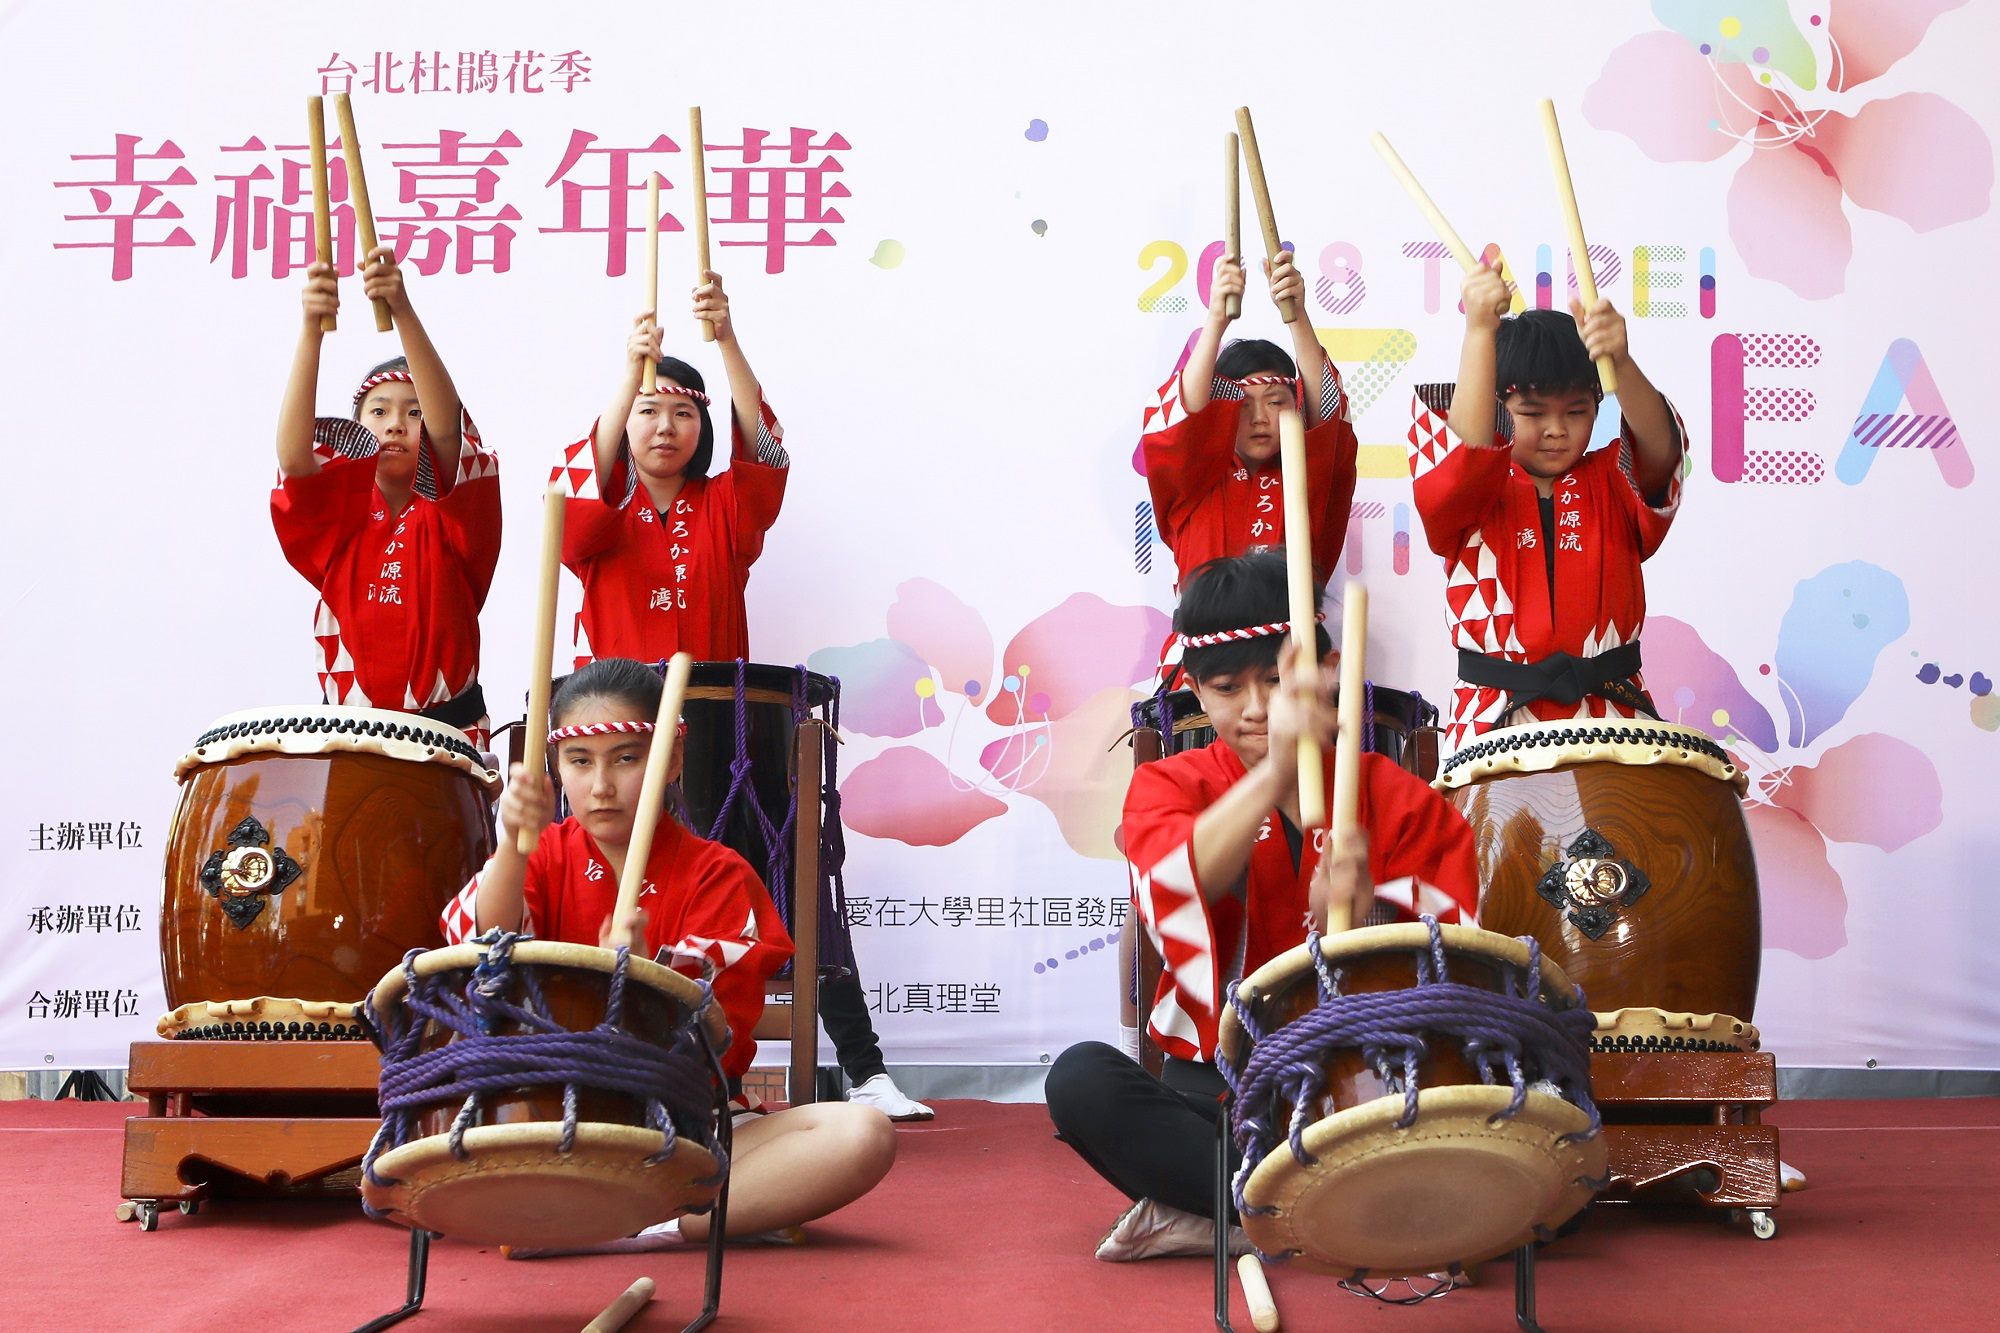 日本表演团体Hiroka源流太鼓队的精采演出，搏得现场民众热烈掌声。